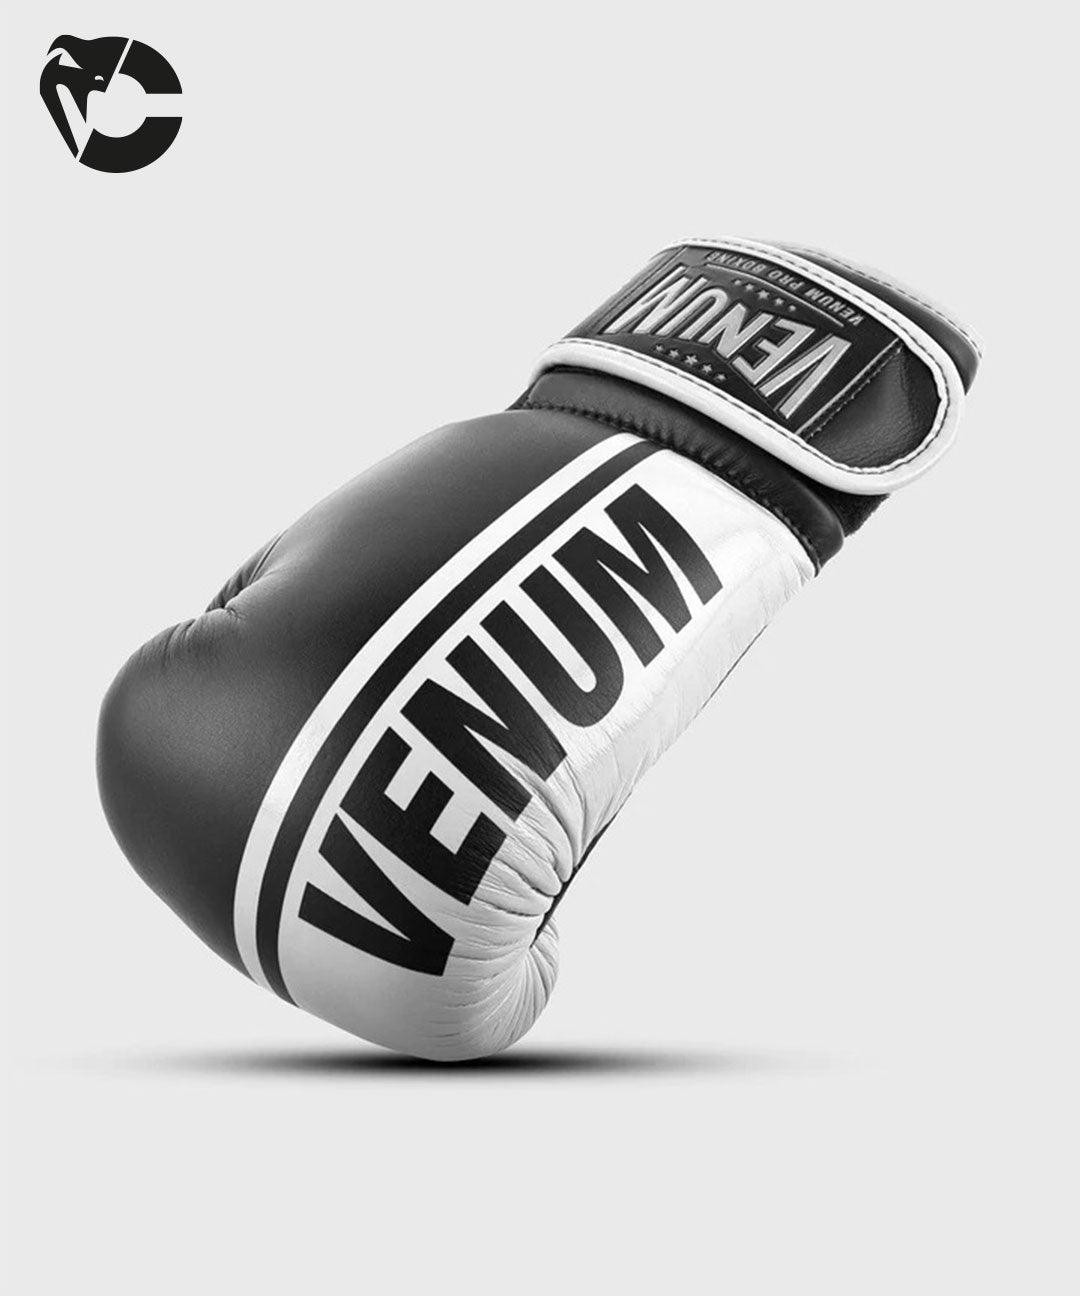 GANTS DE BOXE PRO VENUM GIANT 2.0 - VELCRO Noir/Blanc - boxing